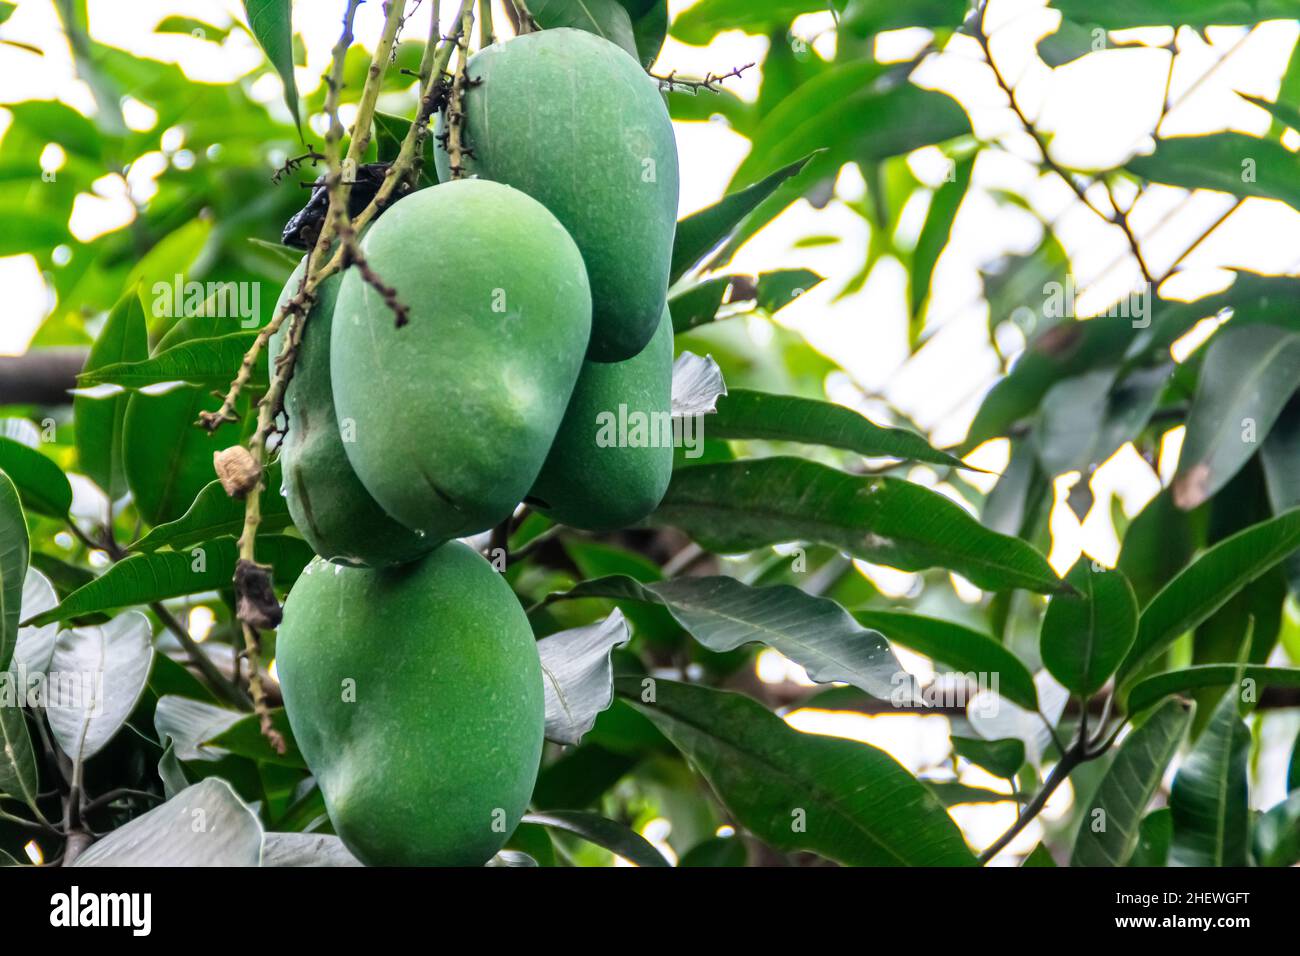 Ein Bund frischer grüner unreifer Mango auf dem Baum mit grünen Blättern, die auf der Farm hängen. Geeignet für gesunde, Natur und leckere Saftgetränk Wallp Stockfoto